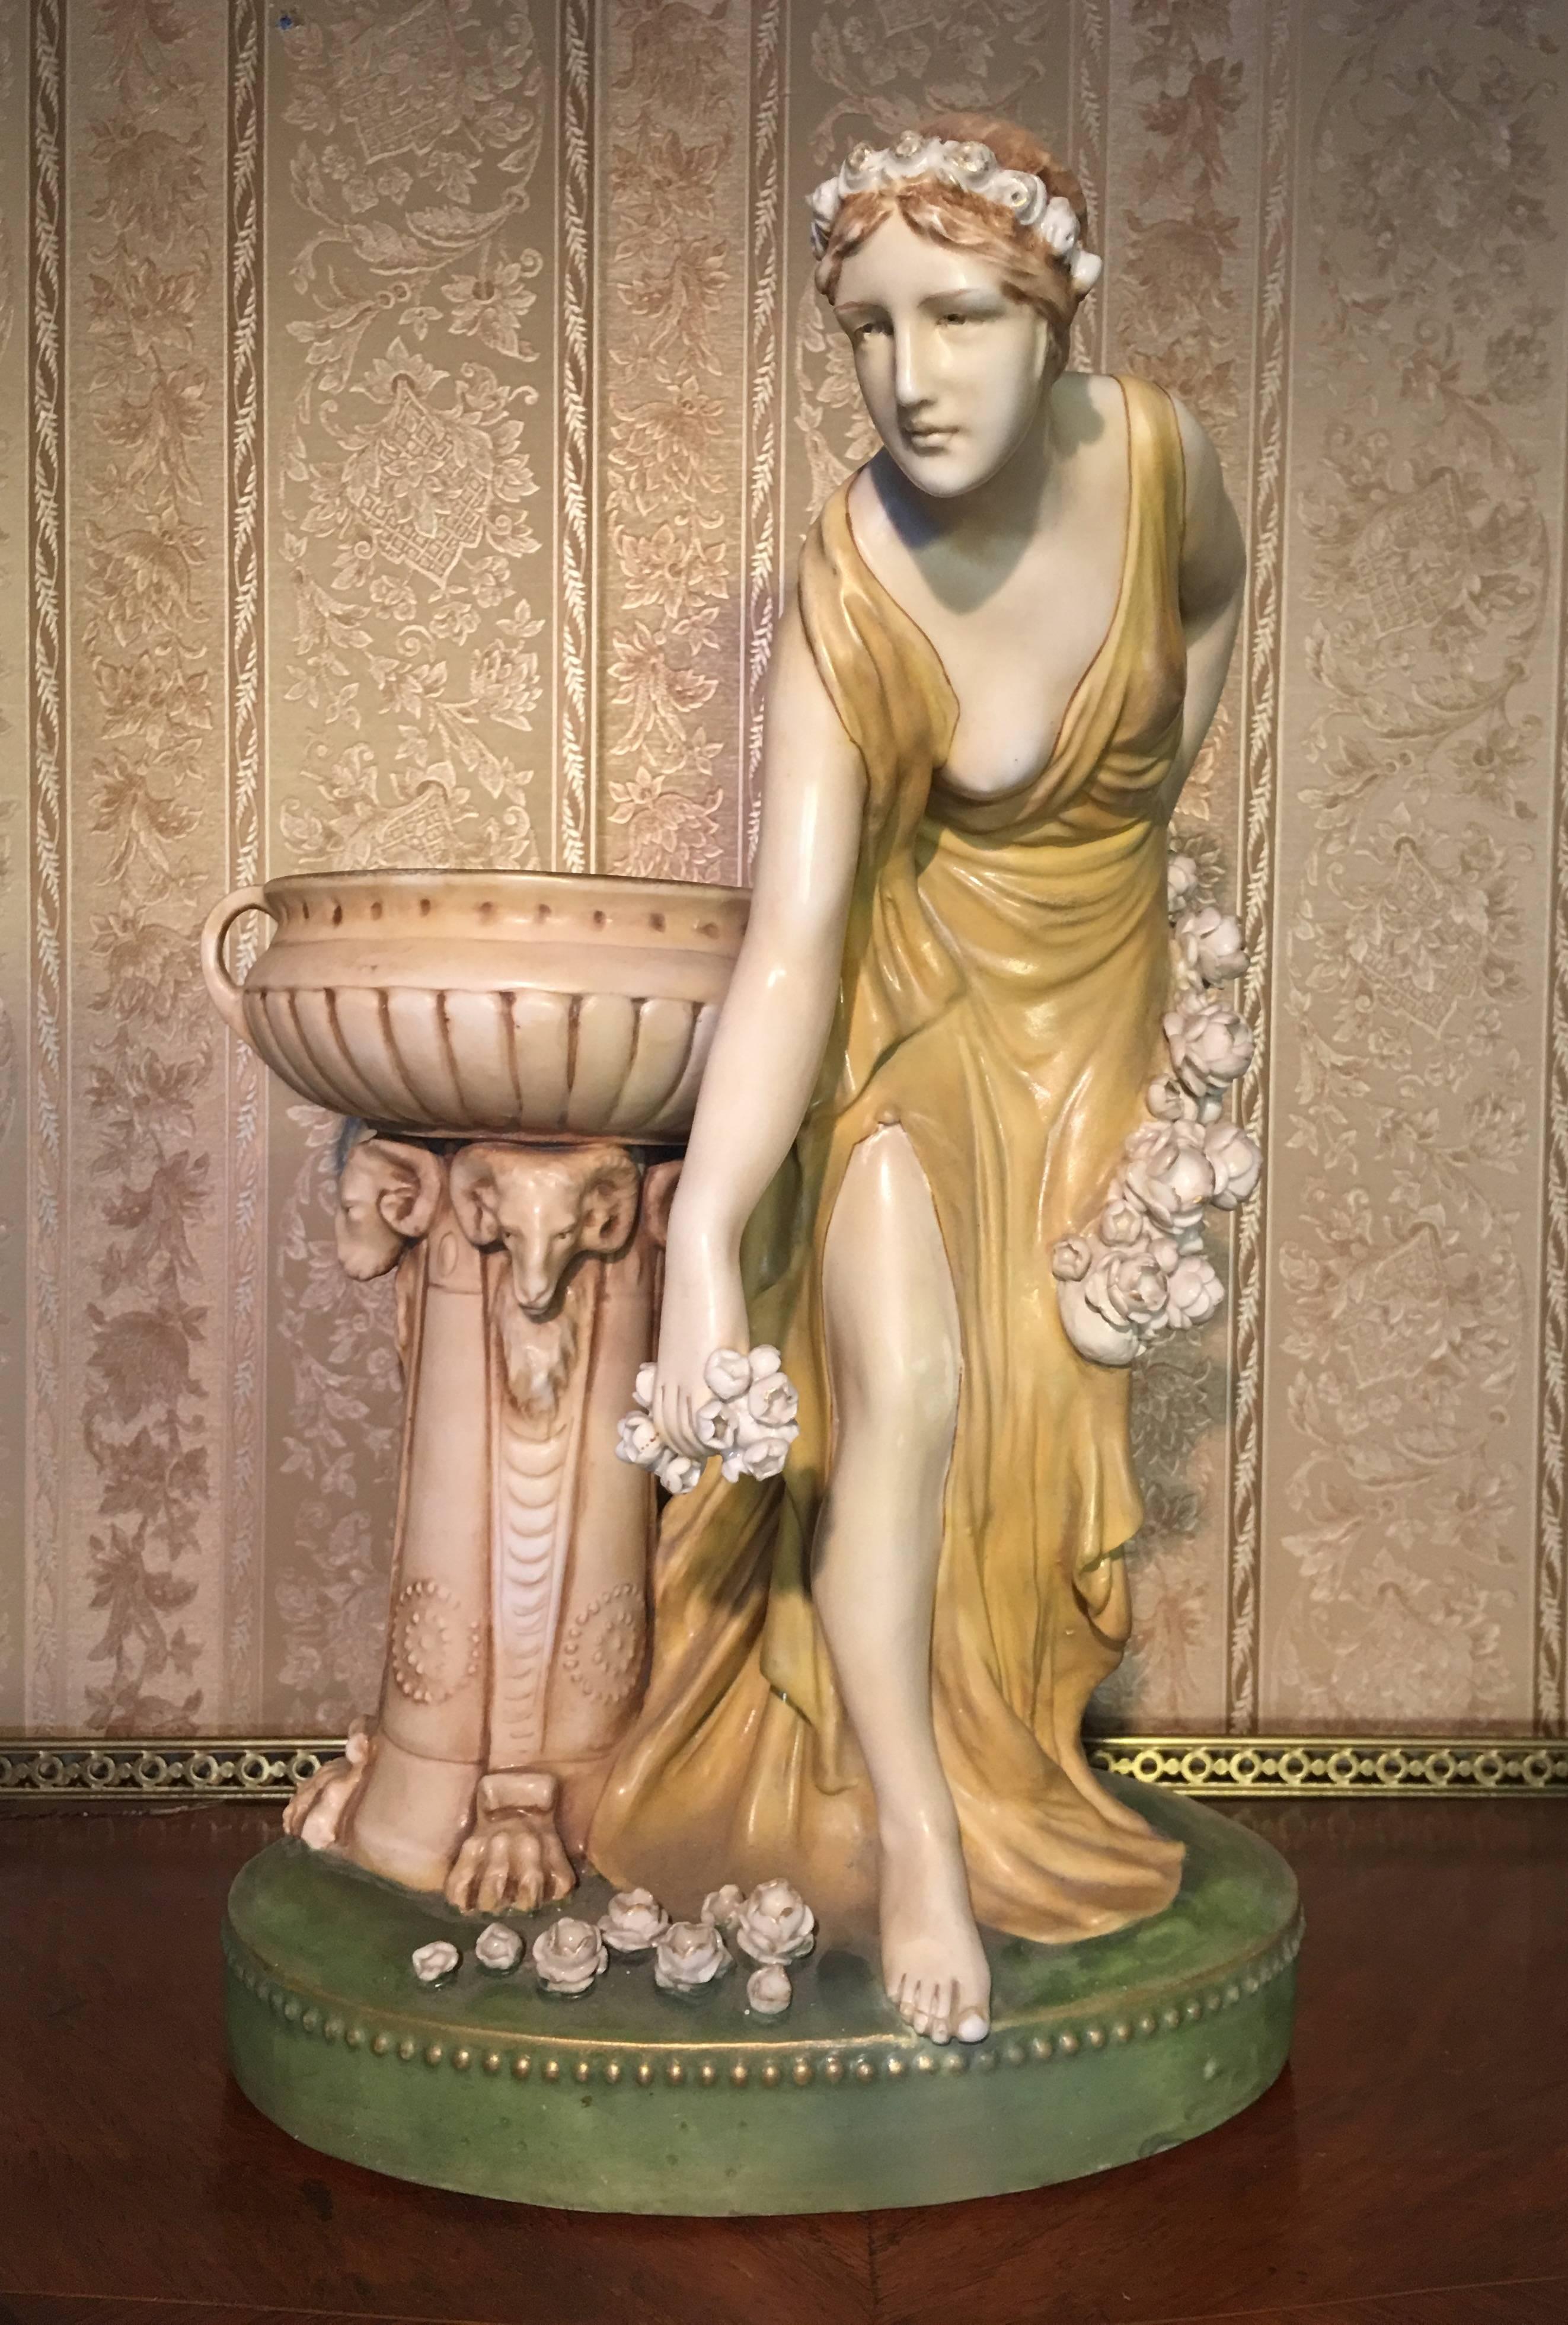 19th Century Imperial Amphora Austria Ceramic Woman Figure